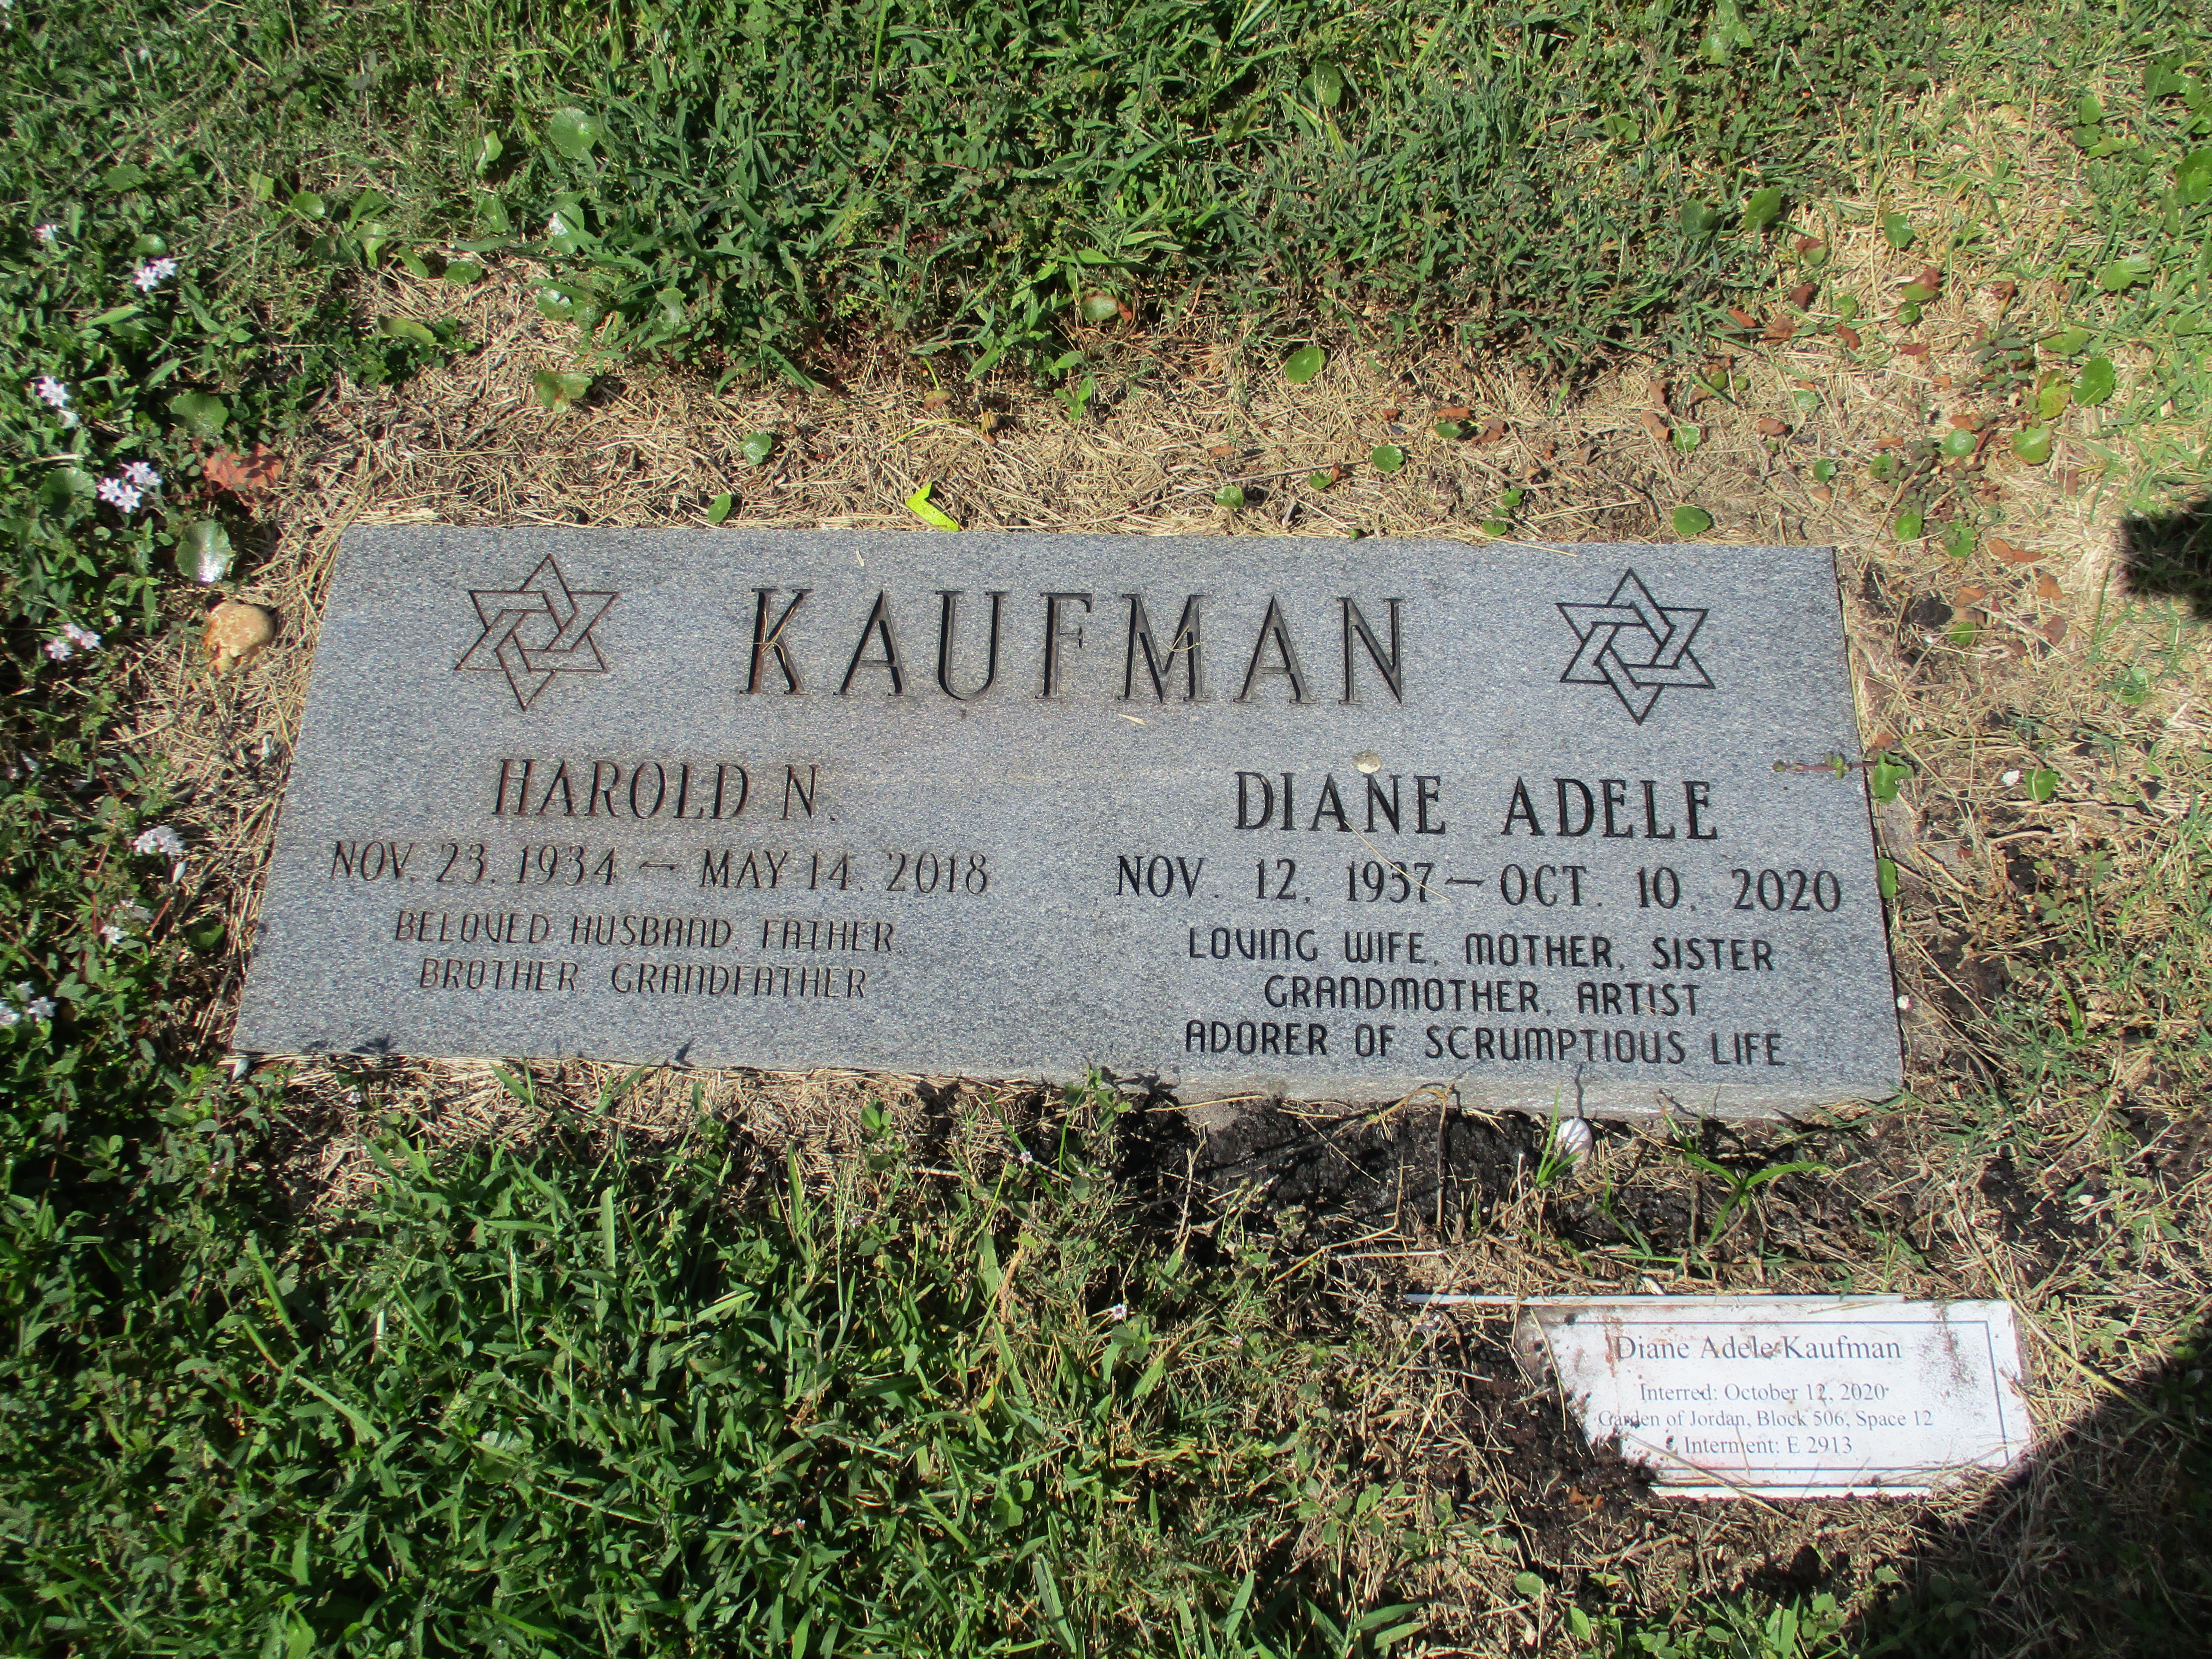 Harold N Kaufman